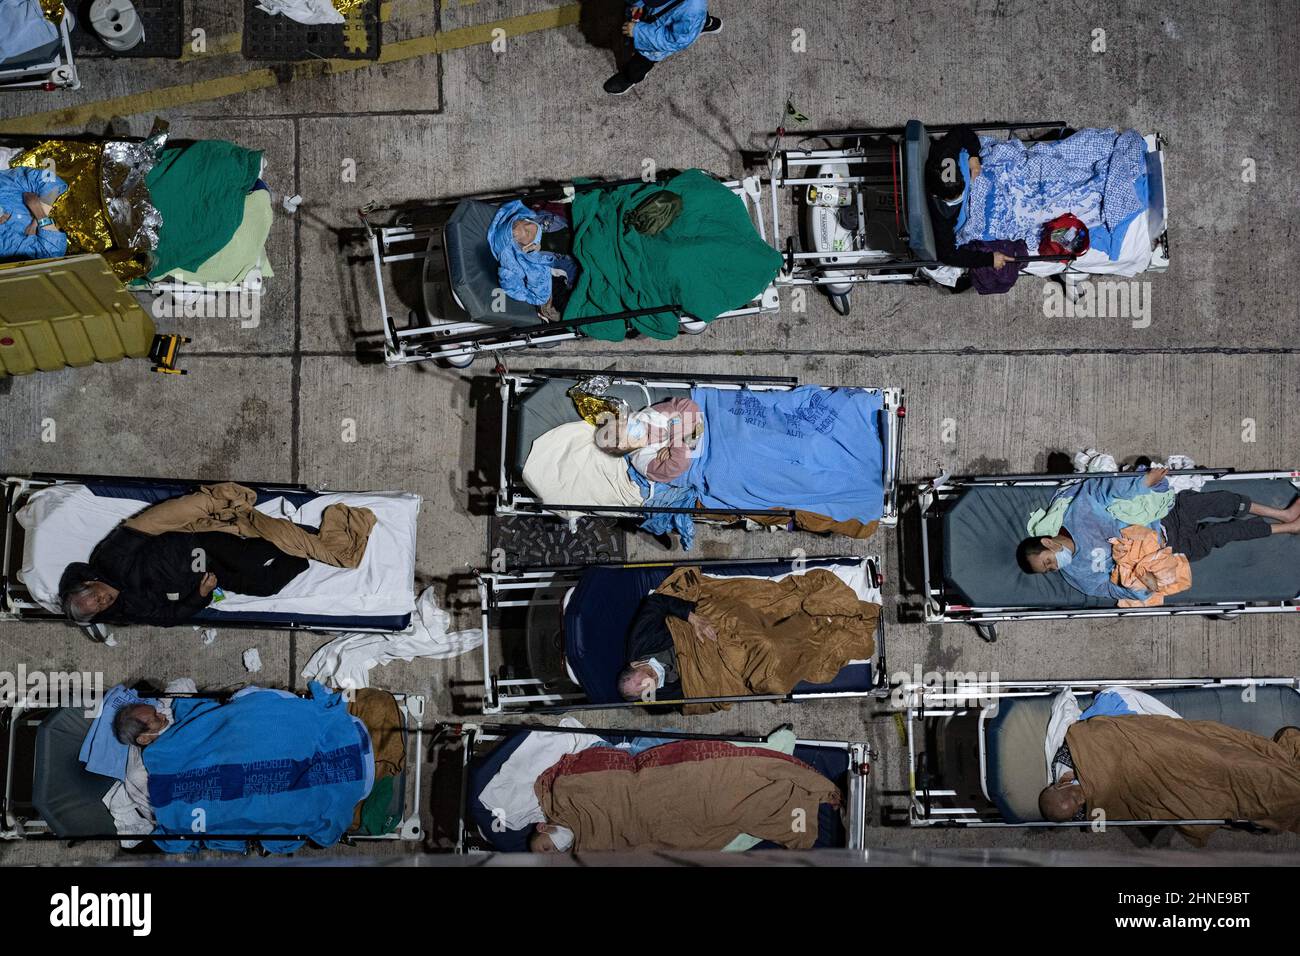 Covid-19 Patienten, die auf Krankenhausbetten auf dem Freigelände außerhalb des Caritas-medizinischen Zentrums liegen. Hongkong kämpft darum, den Ausbruch von Covid-19 einzudämmen, wobei die meisten Krankenhäuser über ihre Kapazitäten verfügen. Patienten auf Krankenhausbetten standen vor Den A&E-Abteilungen des medizinischen Zentrums der Caritas und warteten darauf, ins Krankenhaus zu kommen. (Foto von Dominic Chiu / SOPA Images/Sipa USA) Stockfoto